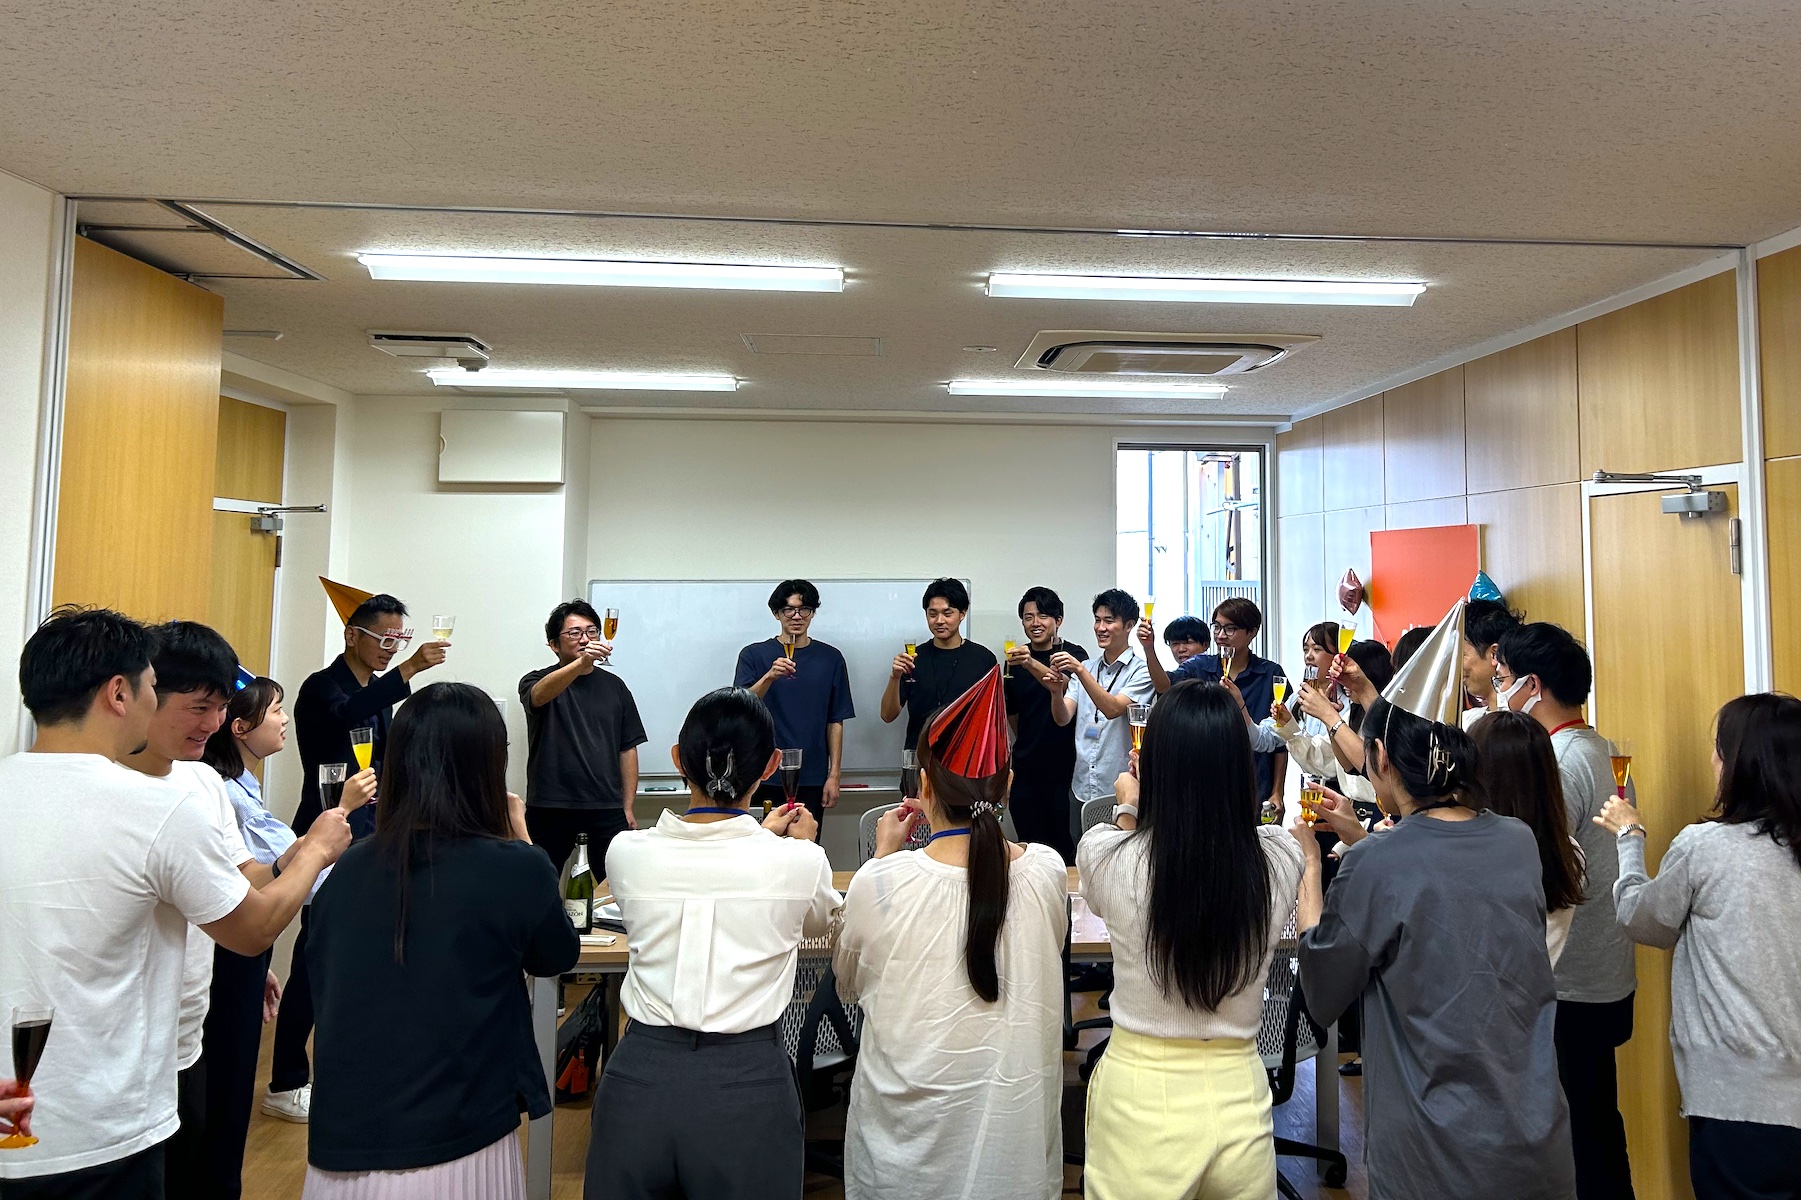 グループ会社Japanticketのオフィスも徒歩3分に立地。普段からグループ間の交流が盛んに行われ、社長の誕生日にはサプライズでお祝いも。